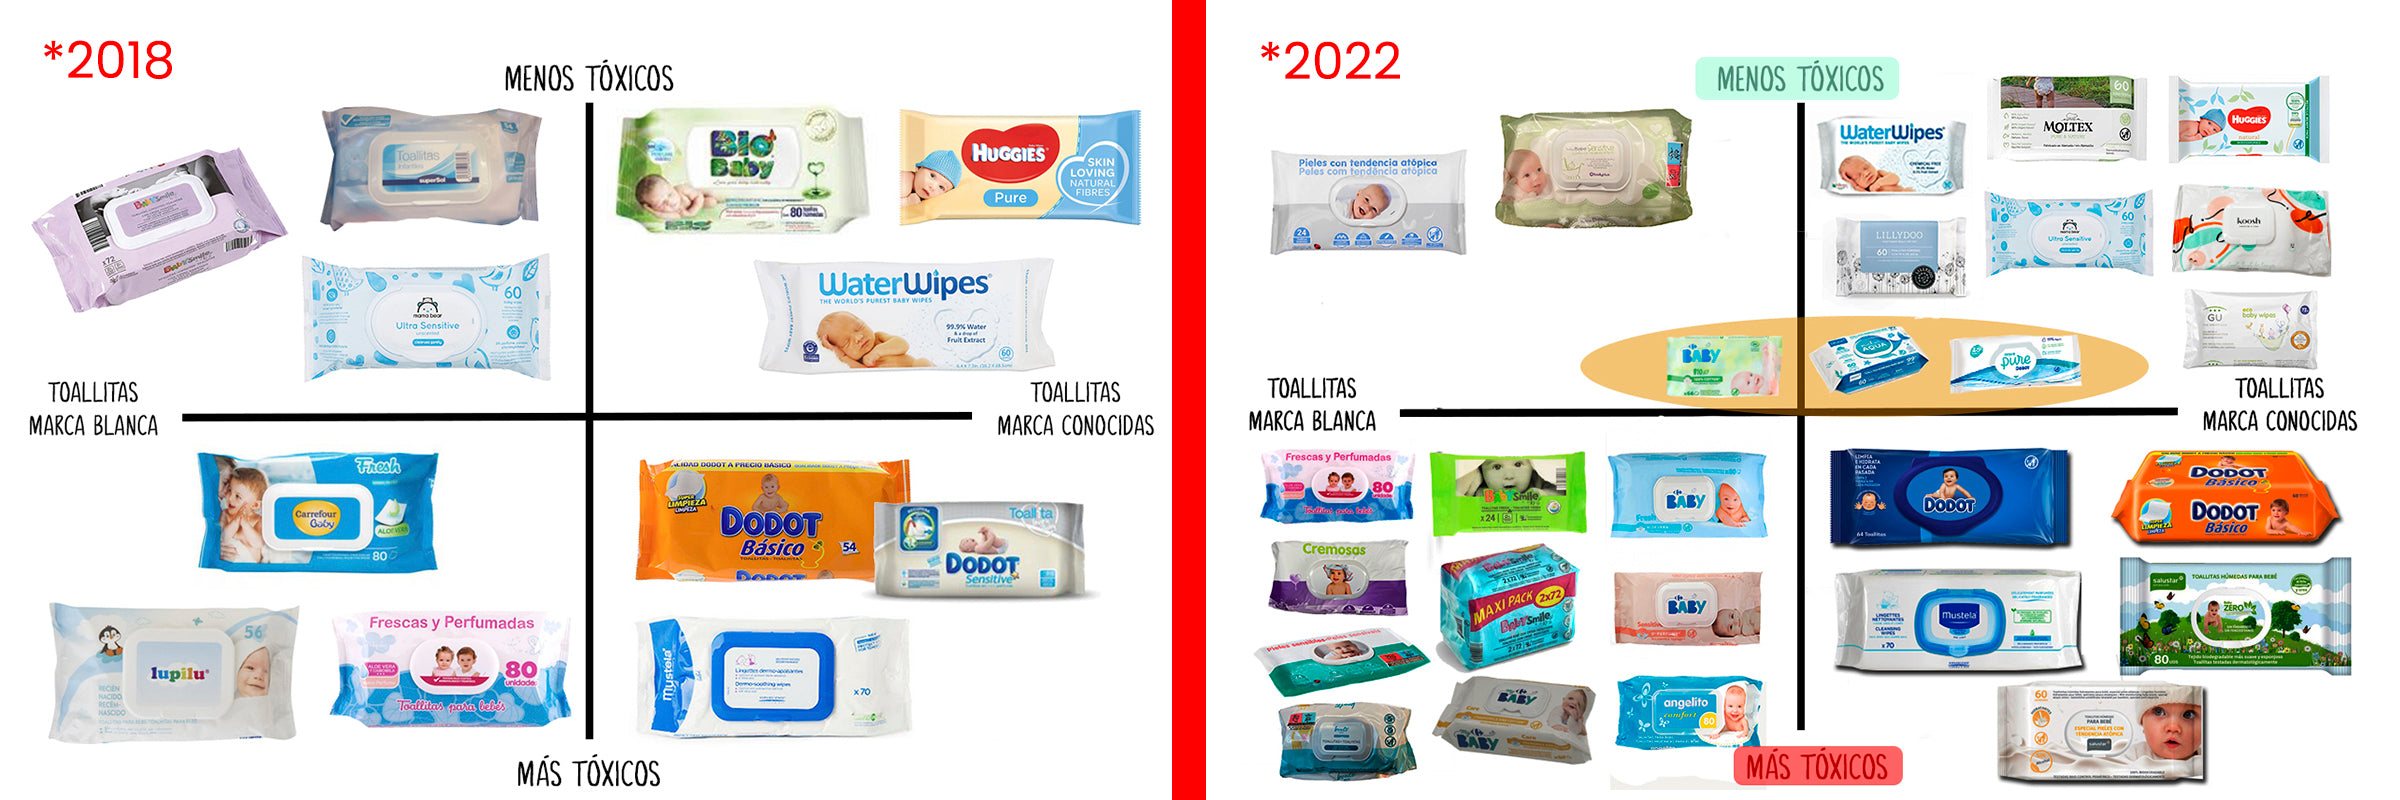 imagen comparativa mejore toallitas 2018 2022